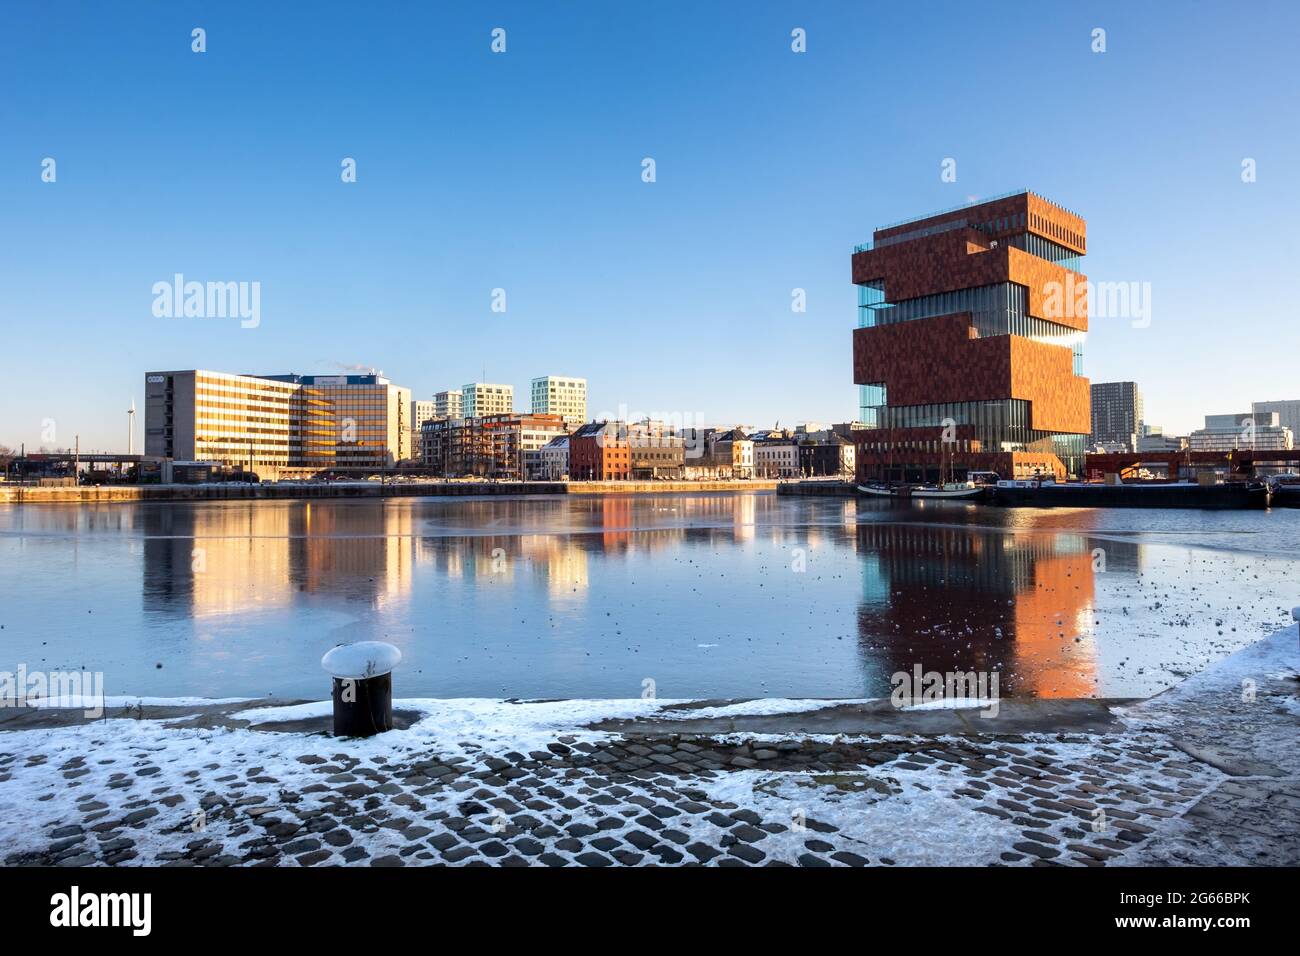 Antwerpen, Belgien - 14. Februar 2021: Das Mas Museum im Zentrum von Antwerpen an einem Wintertag. Stockfoto